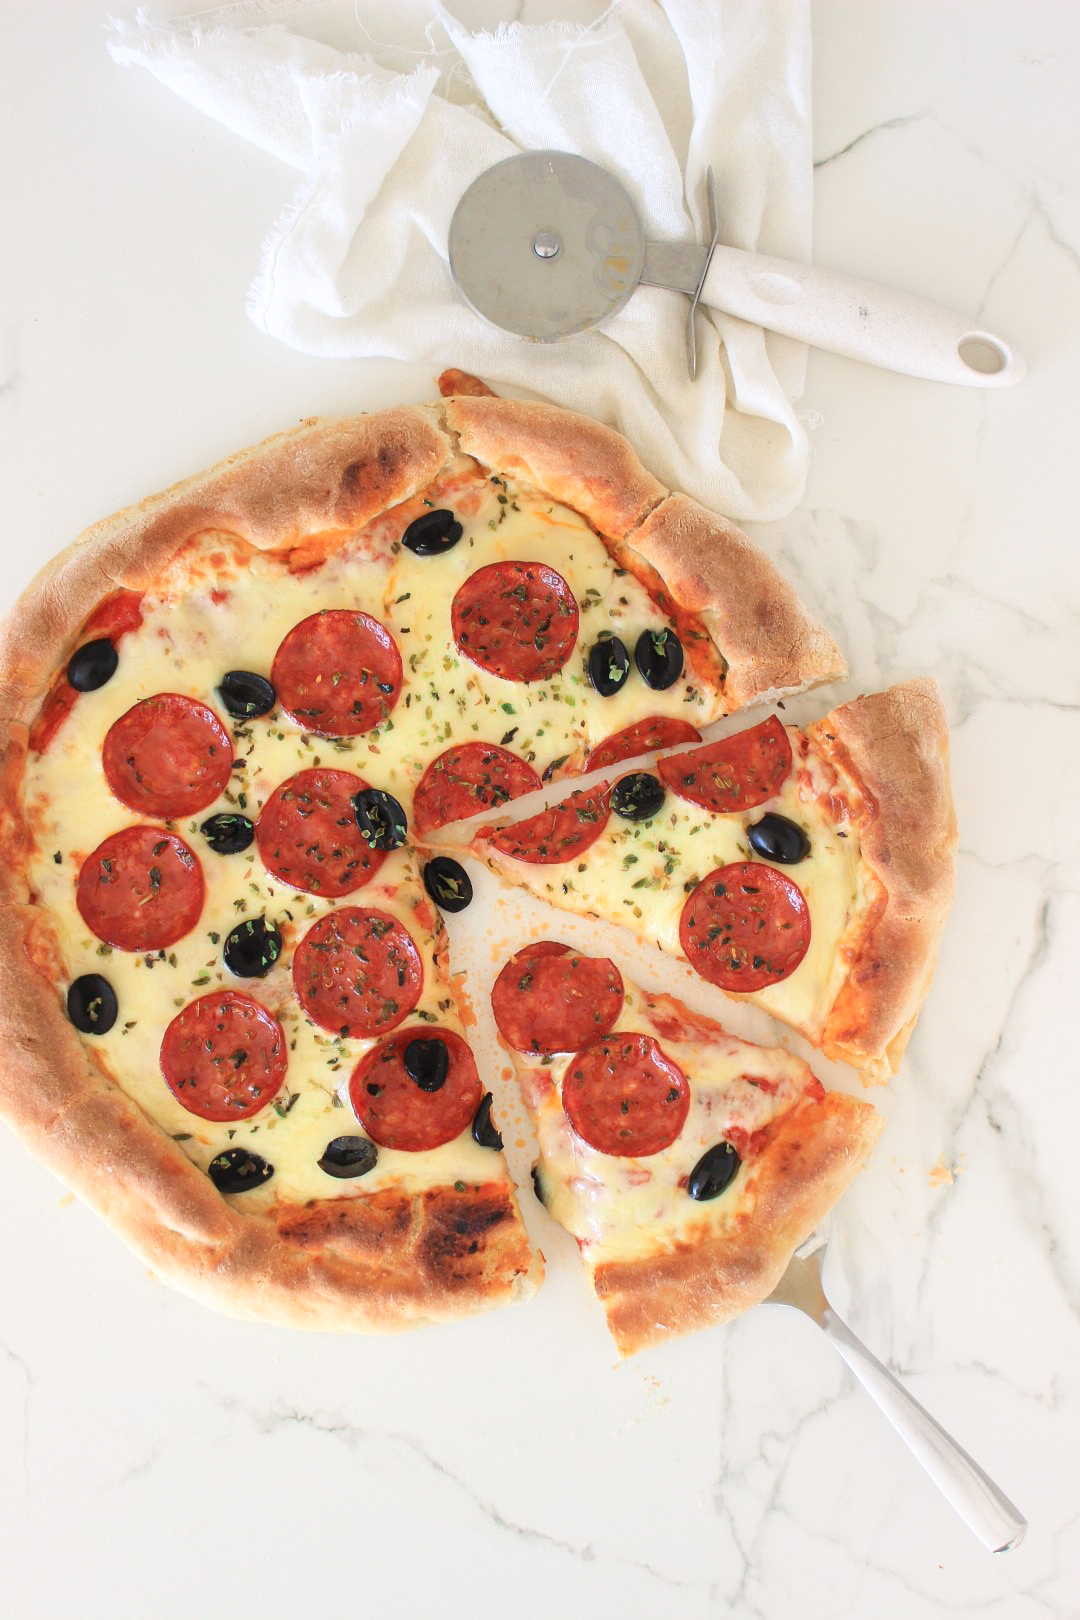 Pizza casera con pepperoni, como hacer masa para pizza, como hacer salsa de tomate, cocina italiana, recetas de cocina